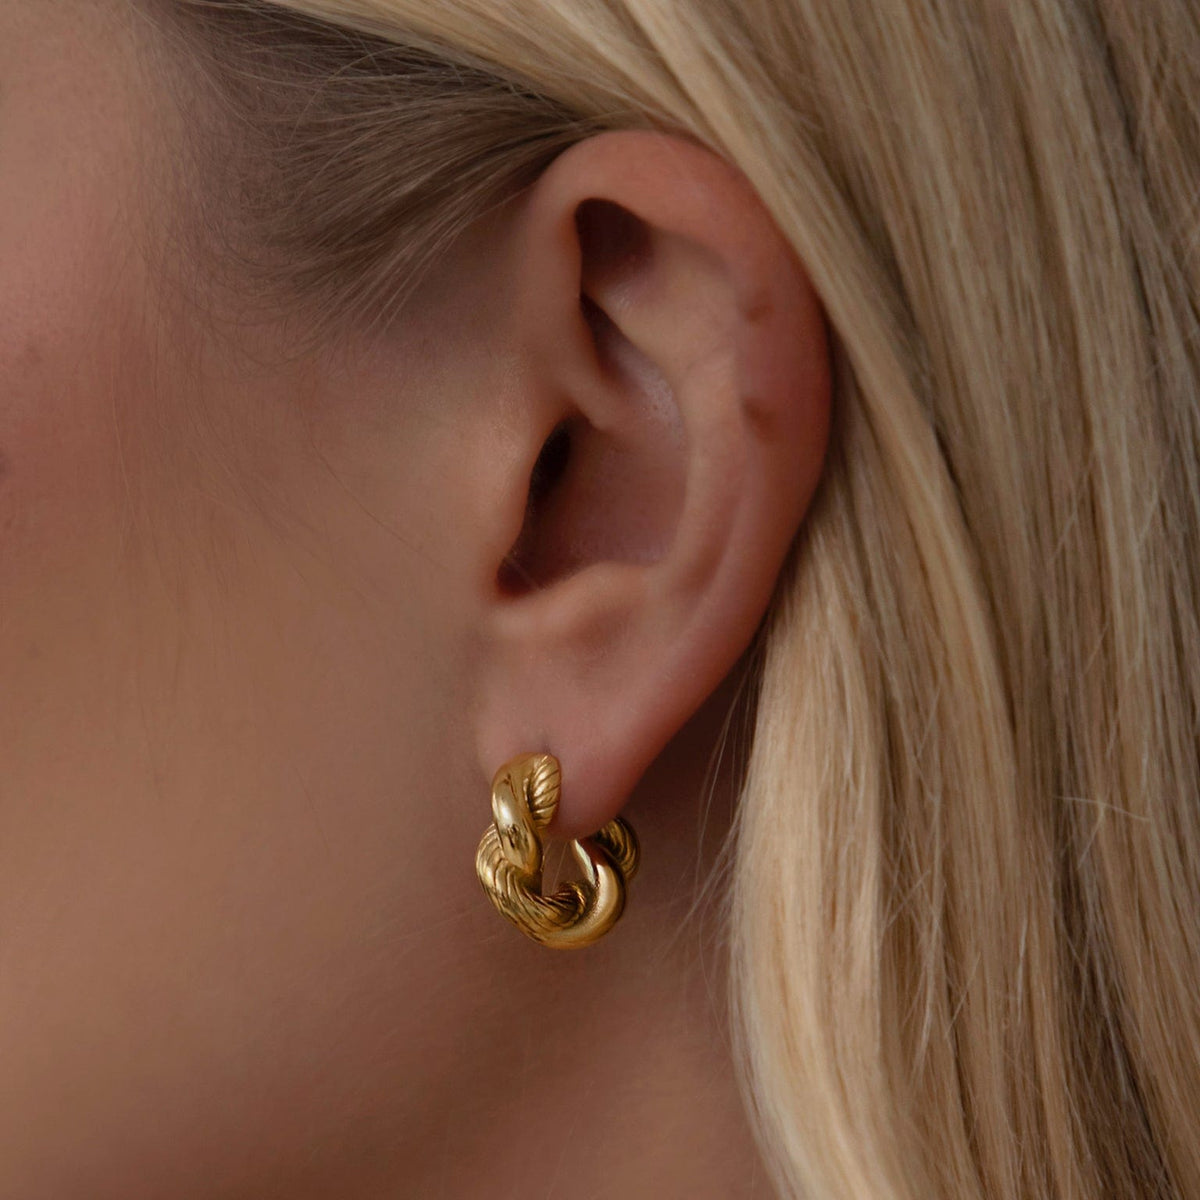 BOHOMOON Stainless Steel Freya Hoop Earrings Gold